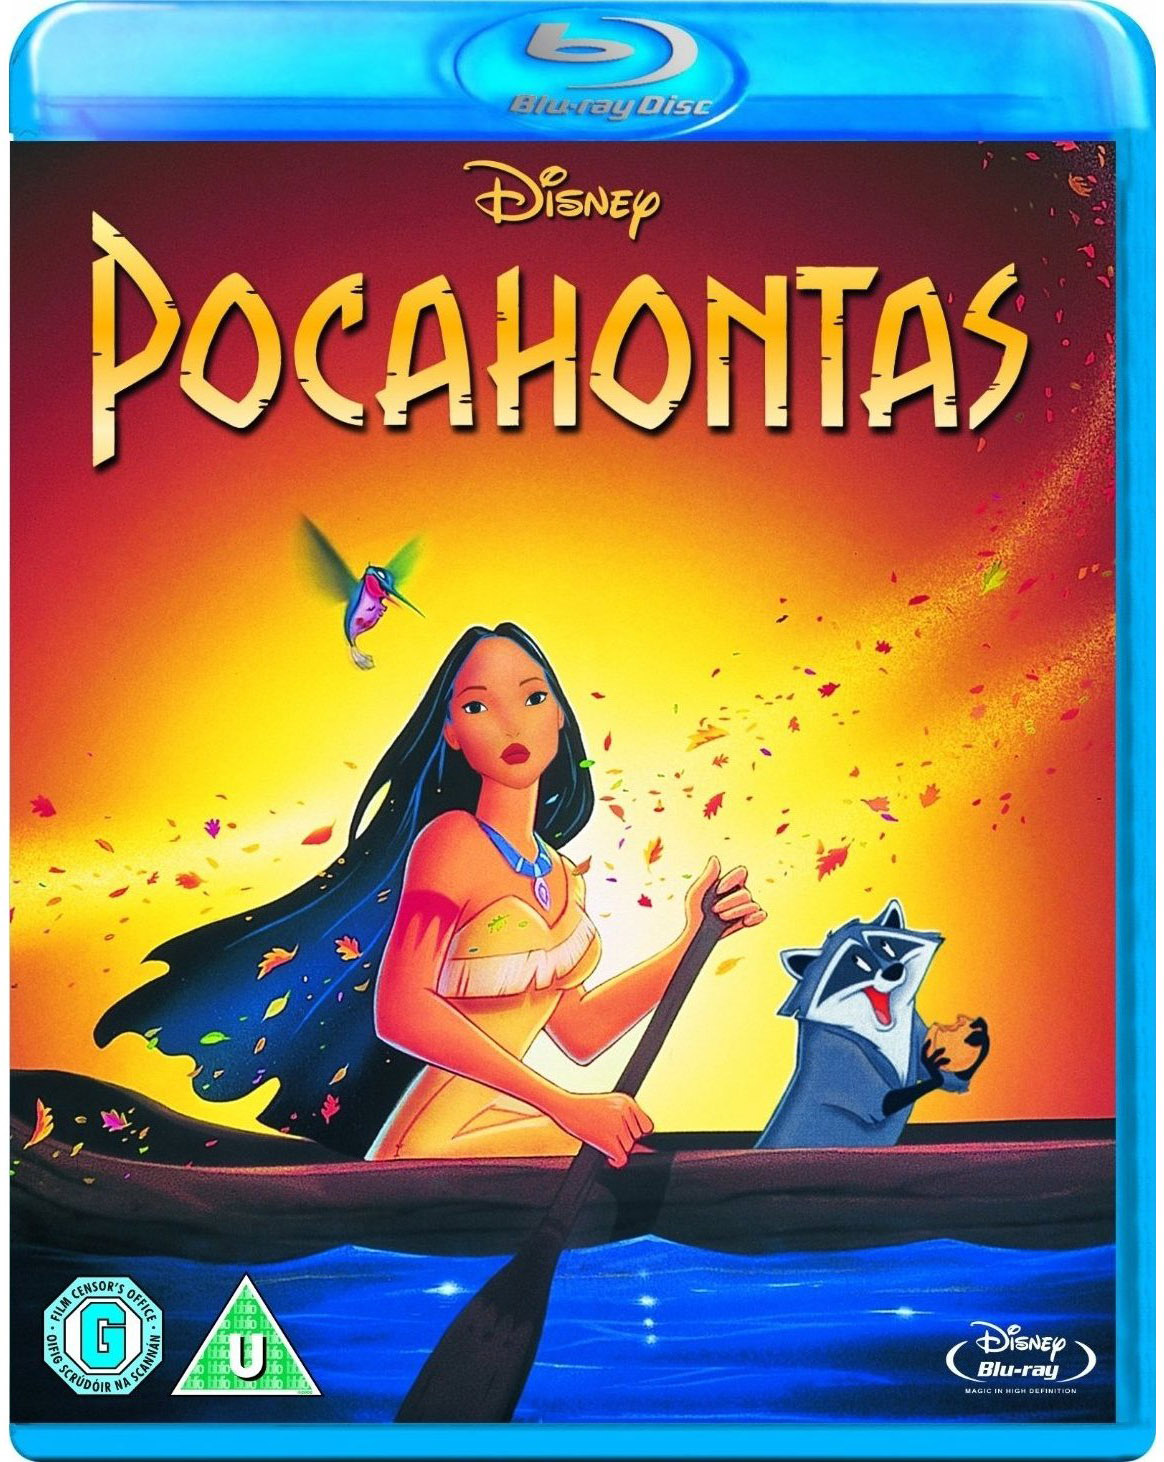 [风中奇缘合集].Pocahontas.I-II.1995-1998.TWN.BluRay.1080p.AVC.DTS-HD.MA.5.1-hgking    38.51G* U$ R! G! t- x+ T$ Y-1.jpg